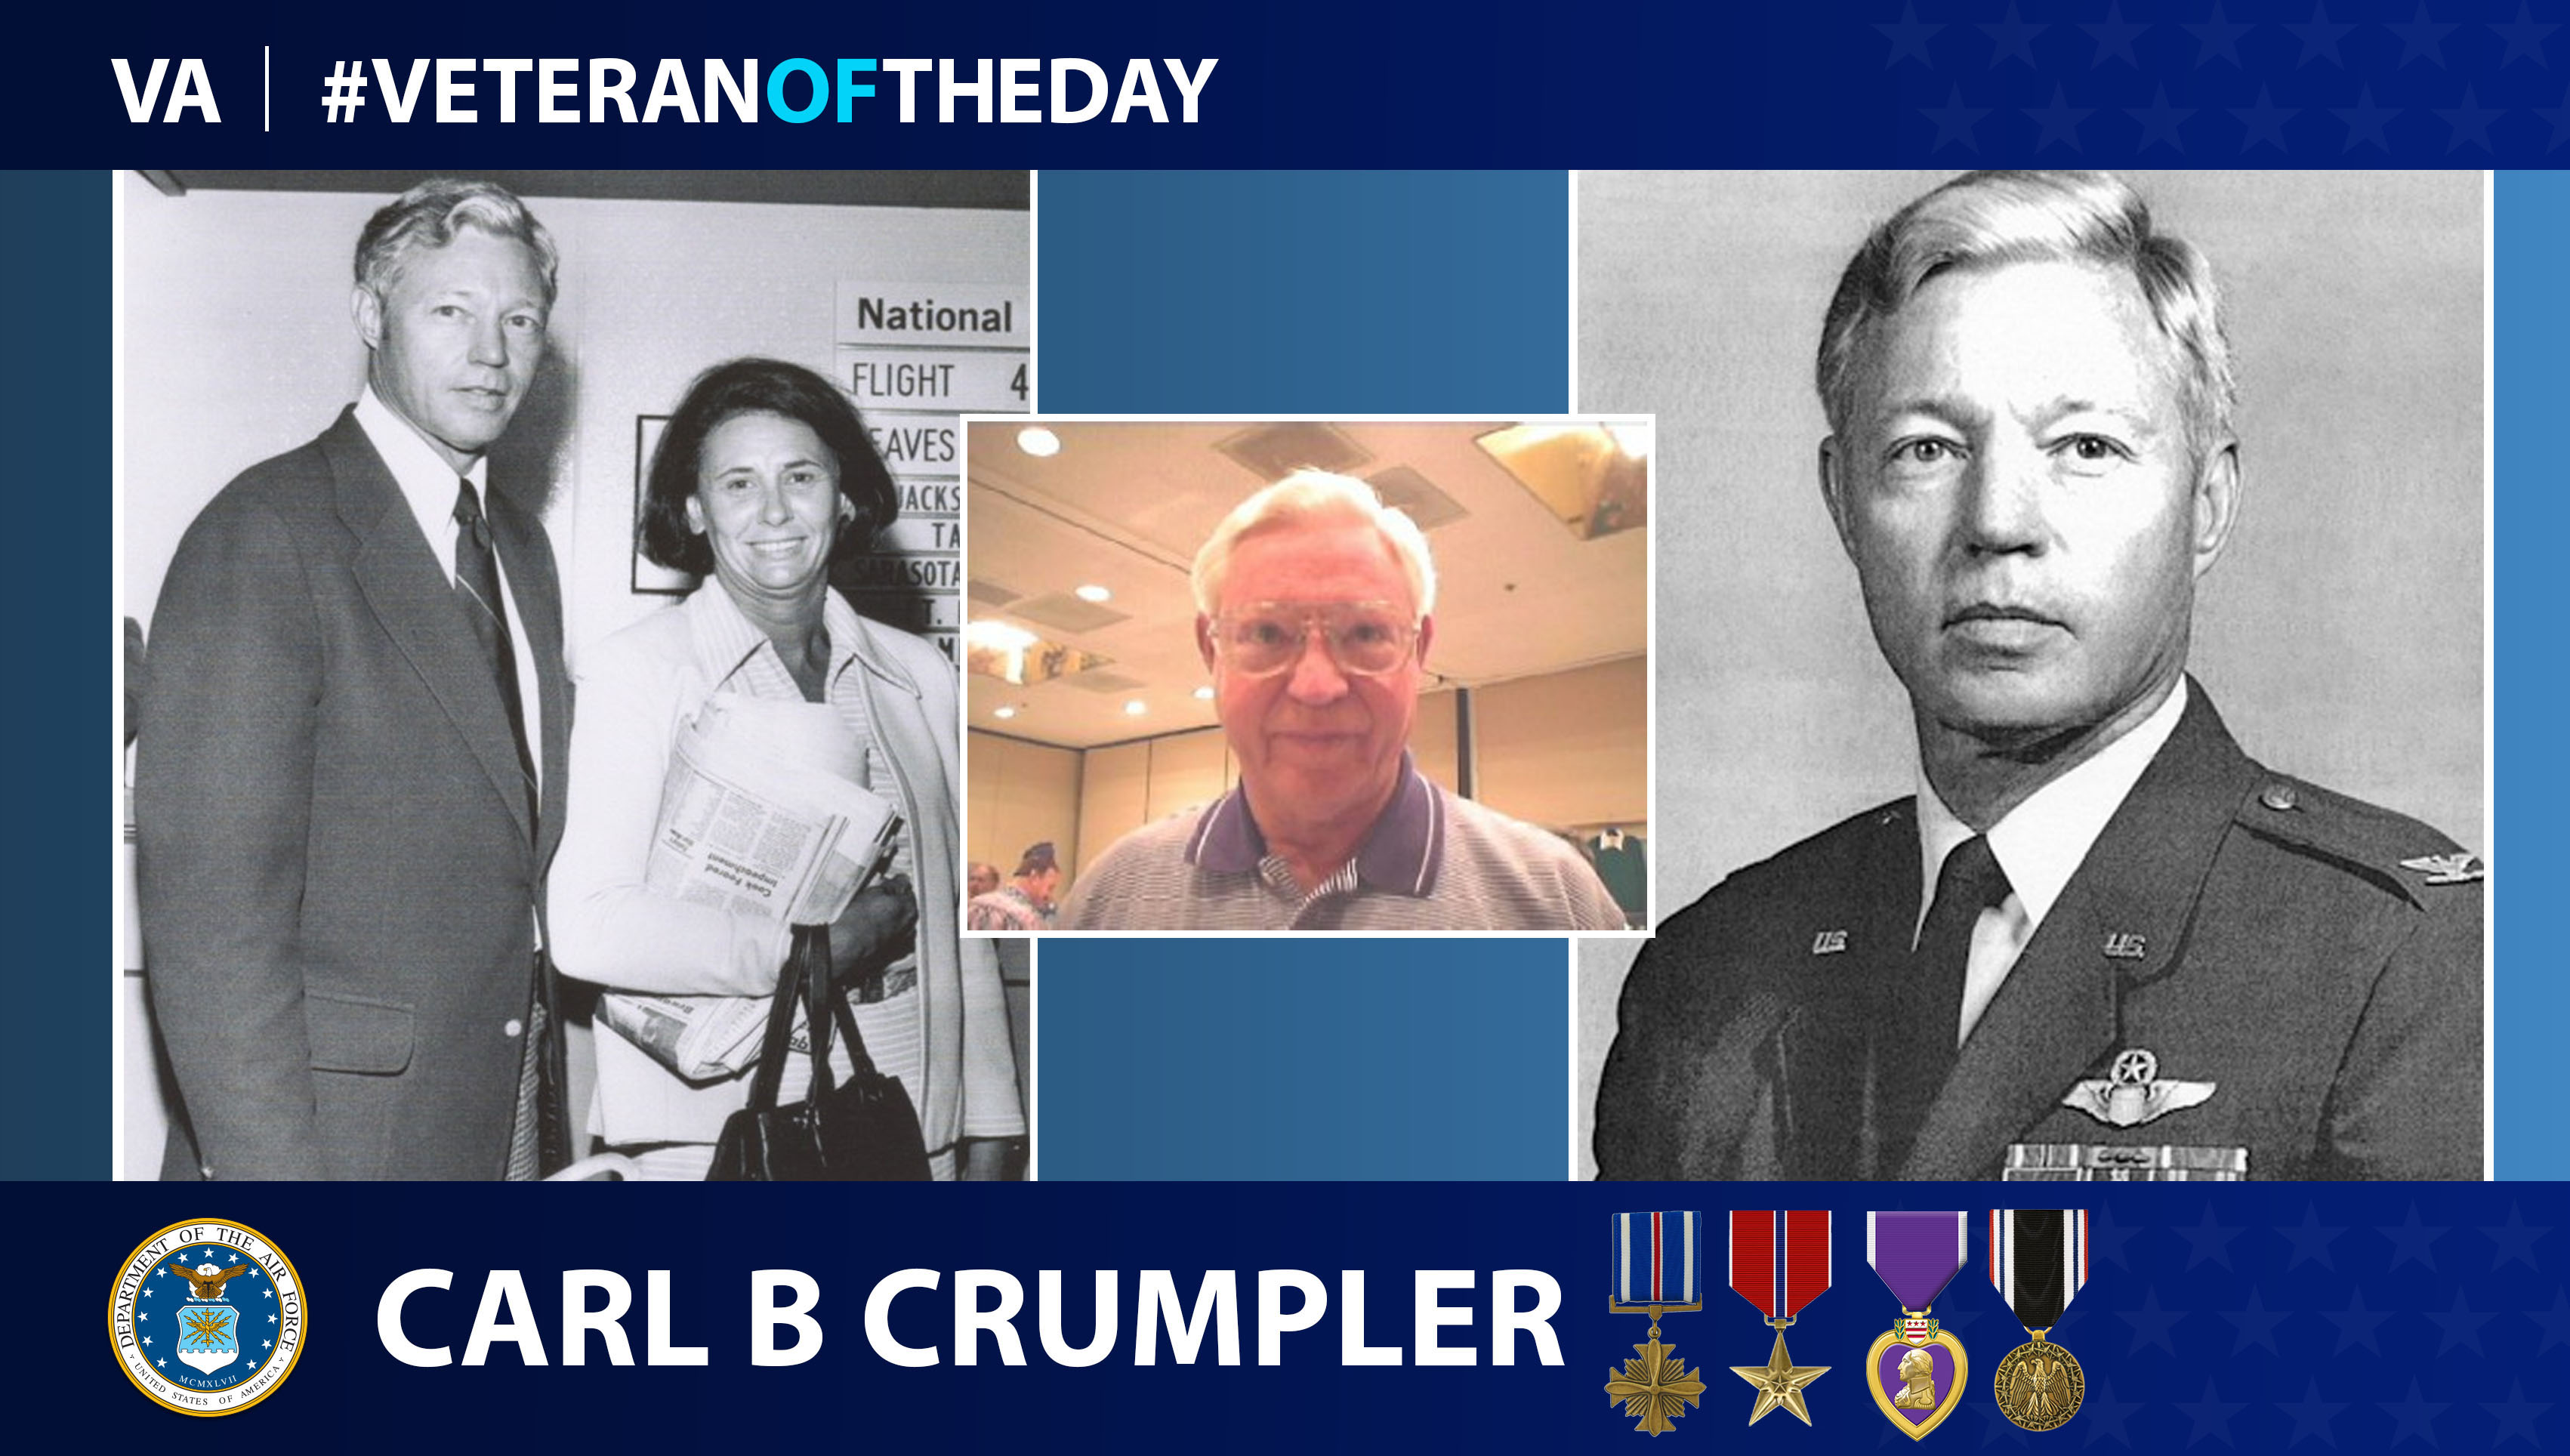 Air Force Veteran Carl B. Crumpler is today's Veteran of the day.